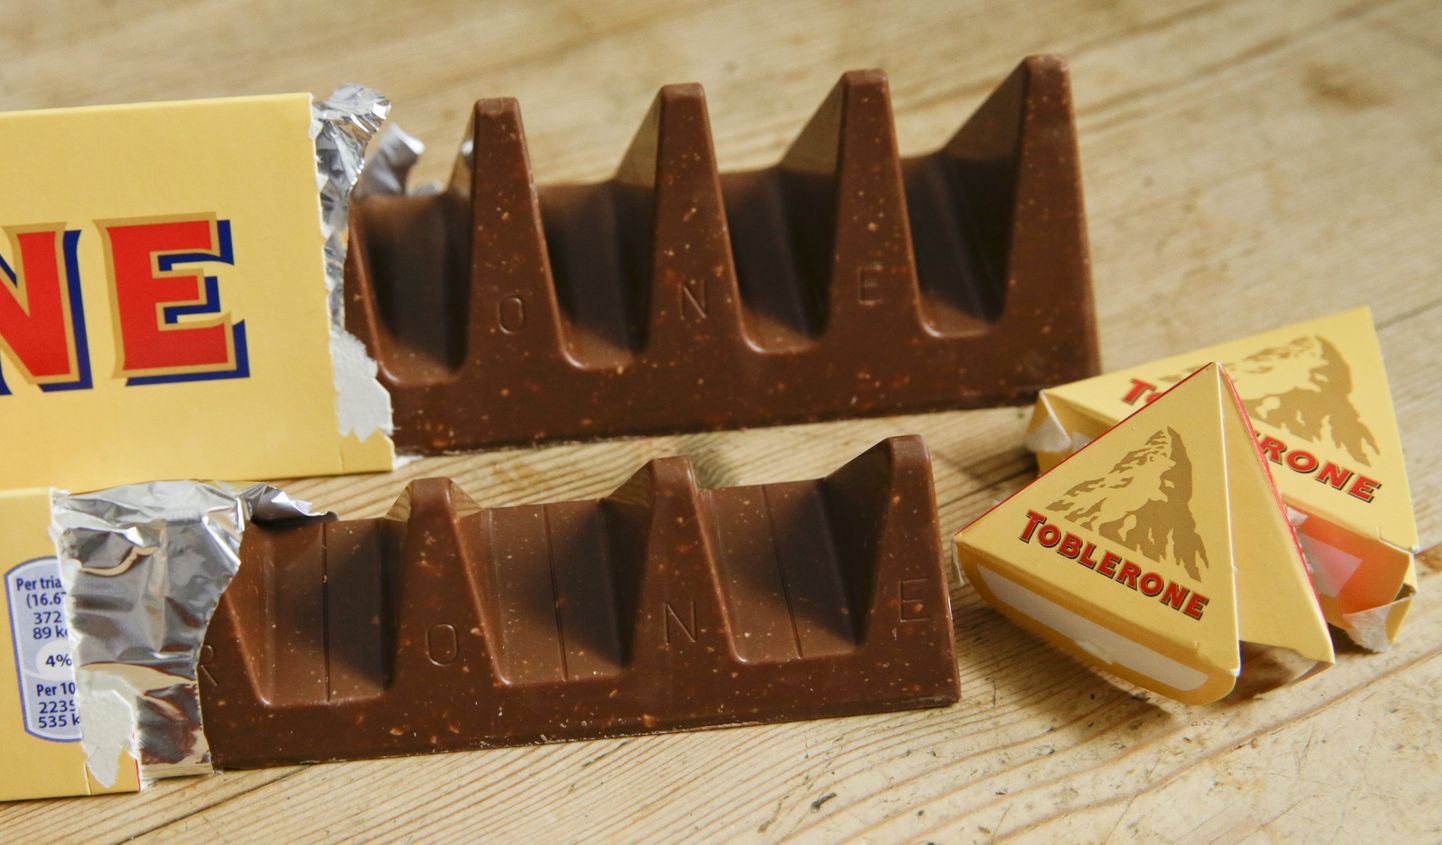 Muuhulgas kuulub Mondelezele ka šokolaaditootja Toblerone.